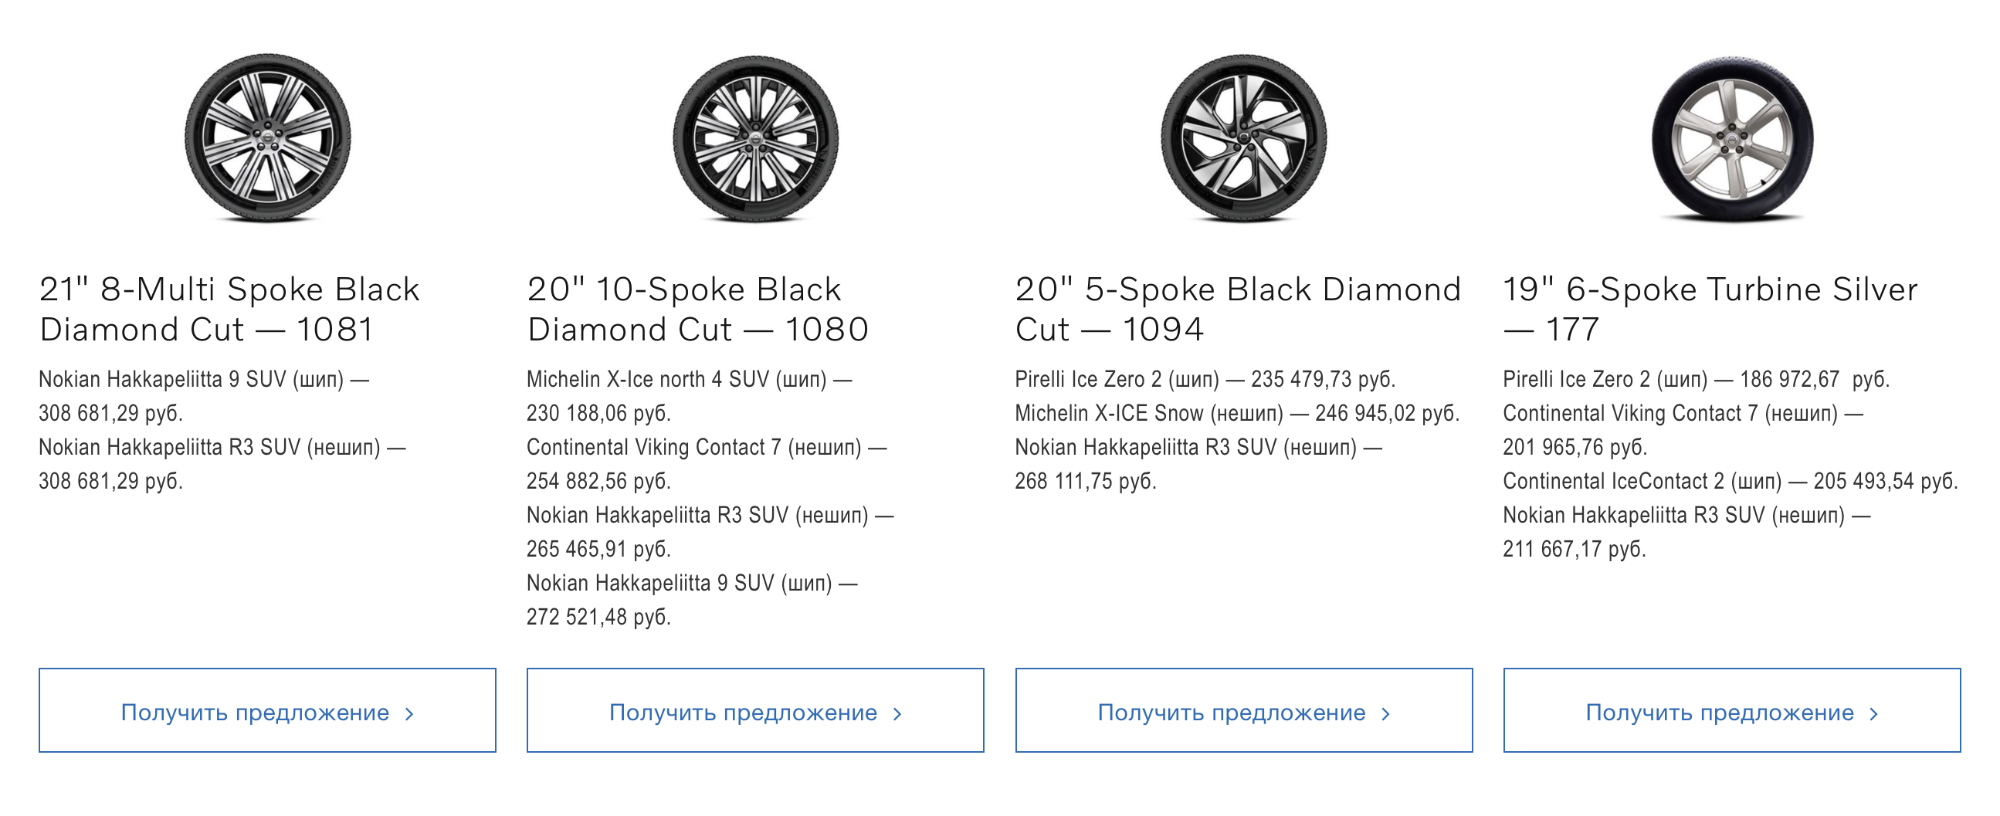 Комплект не самых дорогих оригинальных зимних колес для Вольво XC90 — примерно 200 000 ₽